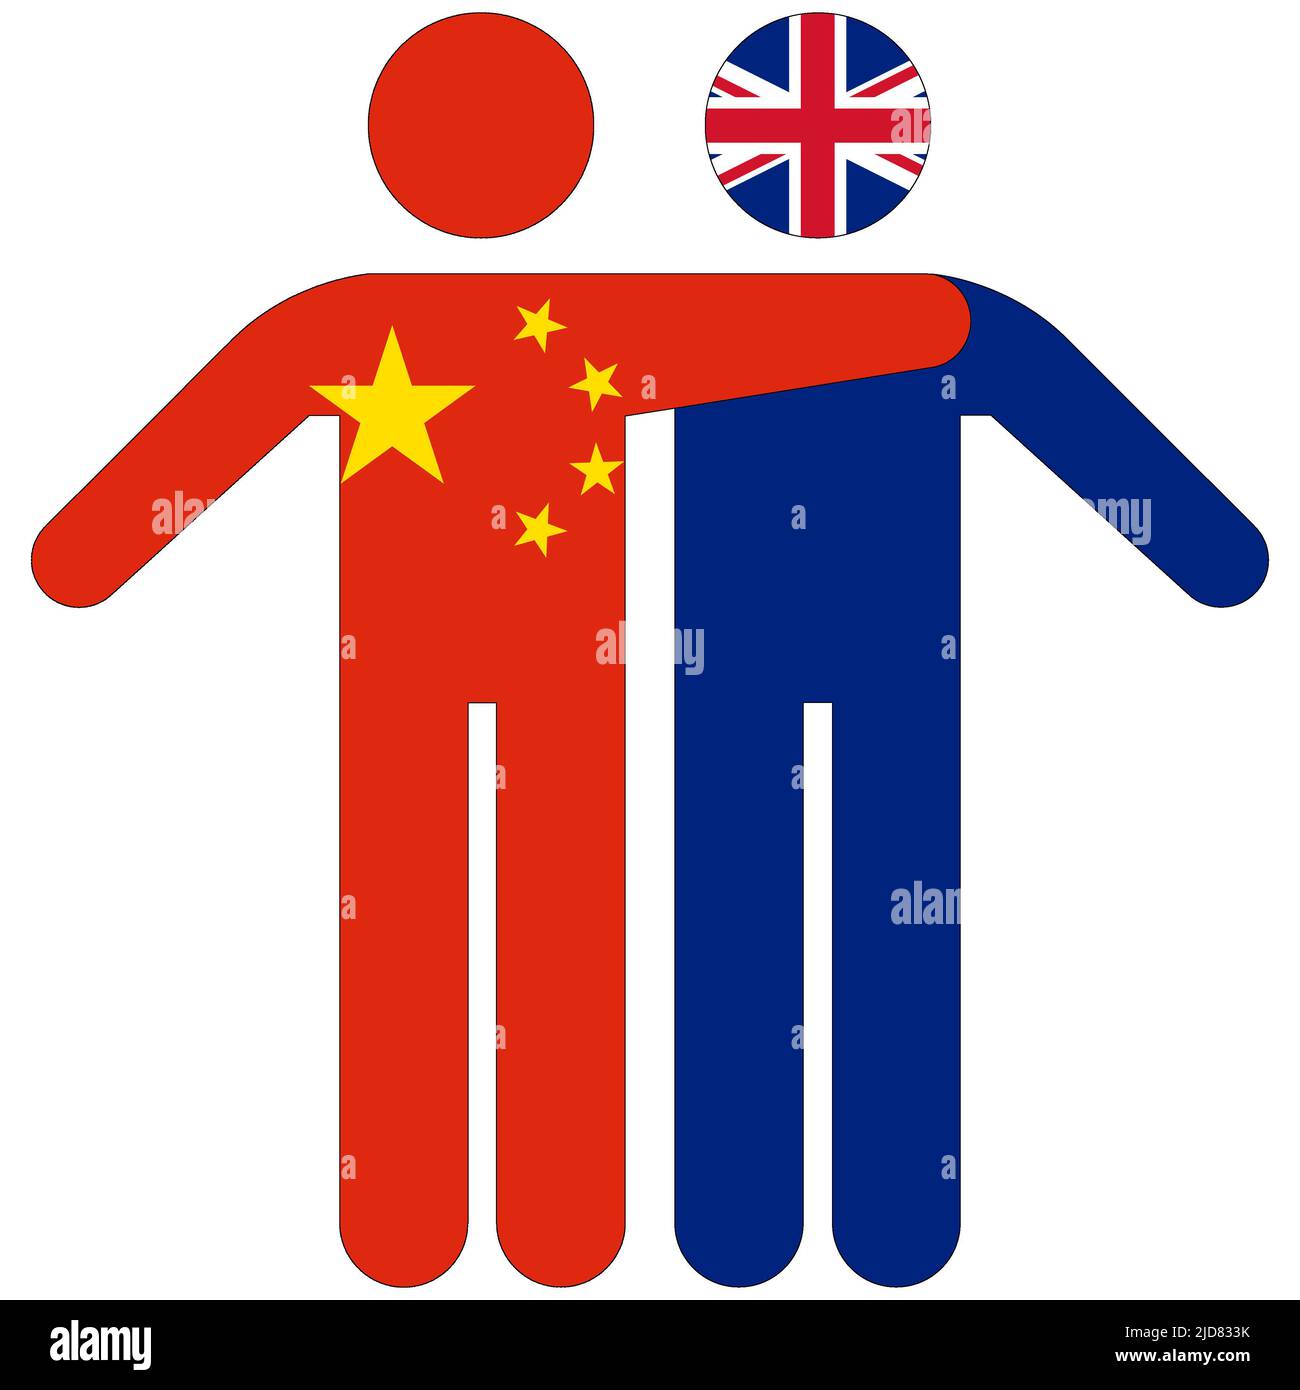 Chine - Royaume-Uni : concept d'amitié sur fond blanc Banque D'Images